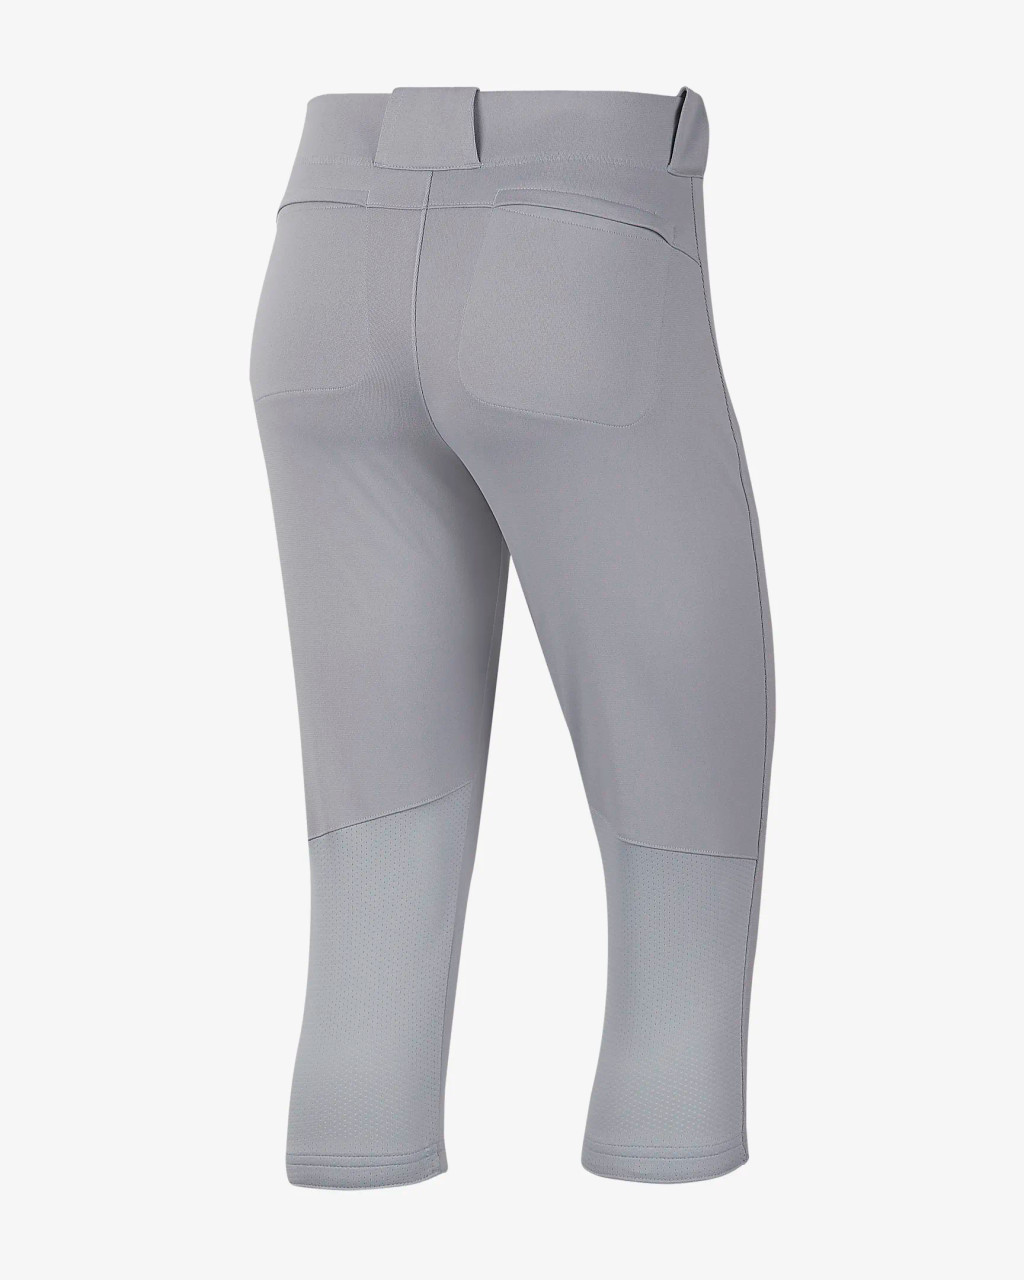 Nike Men's Stock Vapor Select High Pant